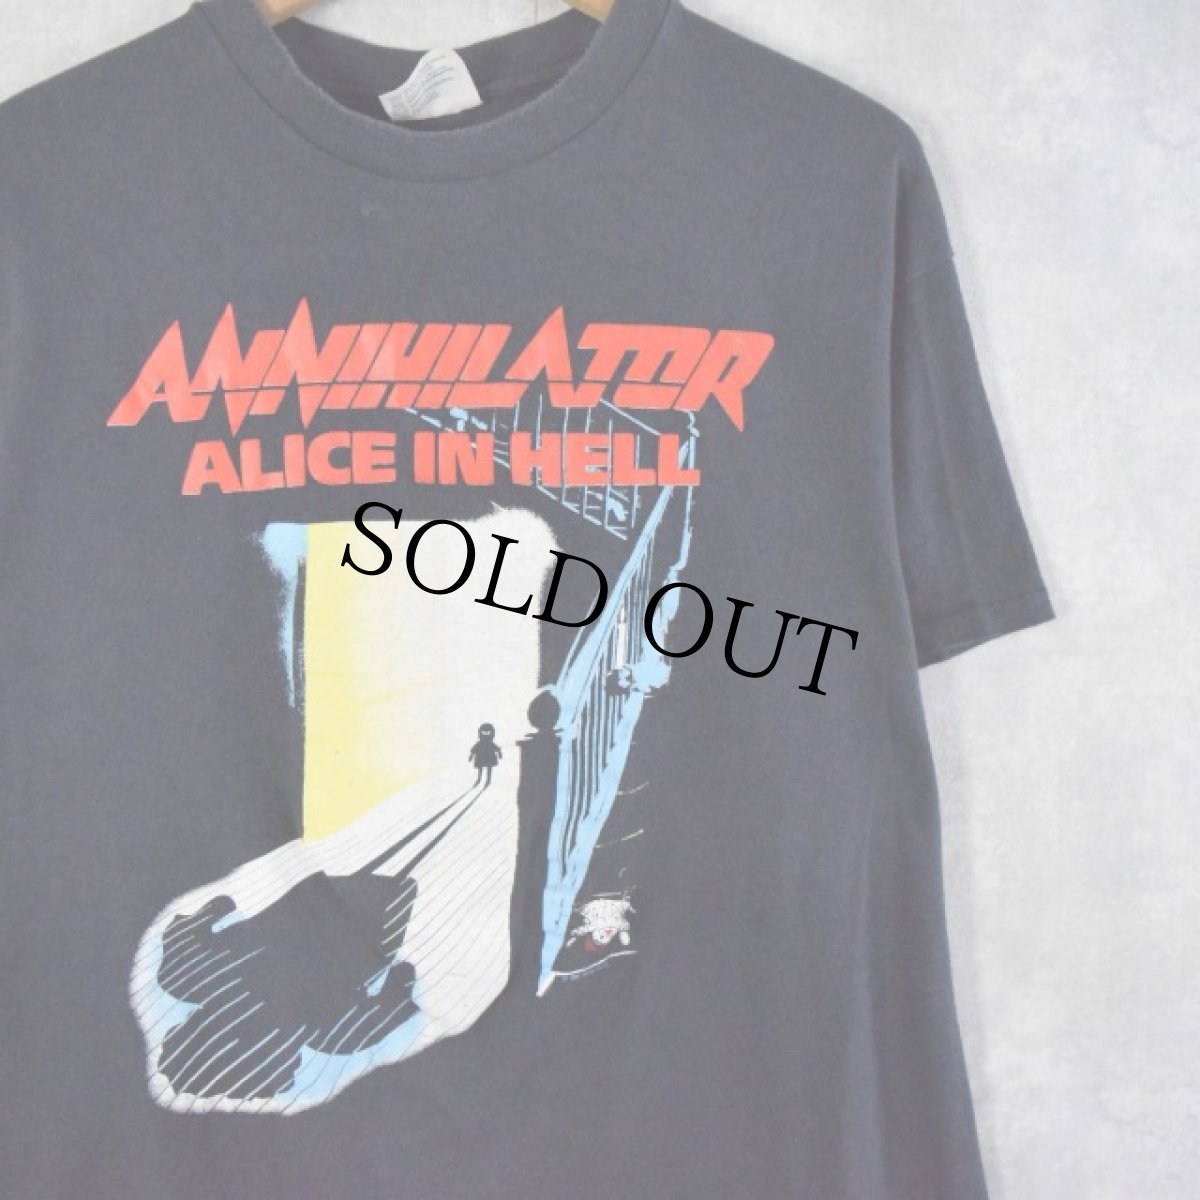 画像1: 80's Annihilator "ALICE IN HELL" USA製 スラッシュメタルバンドTシャツ XL (1)